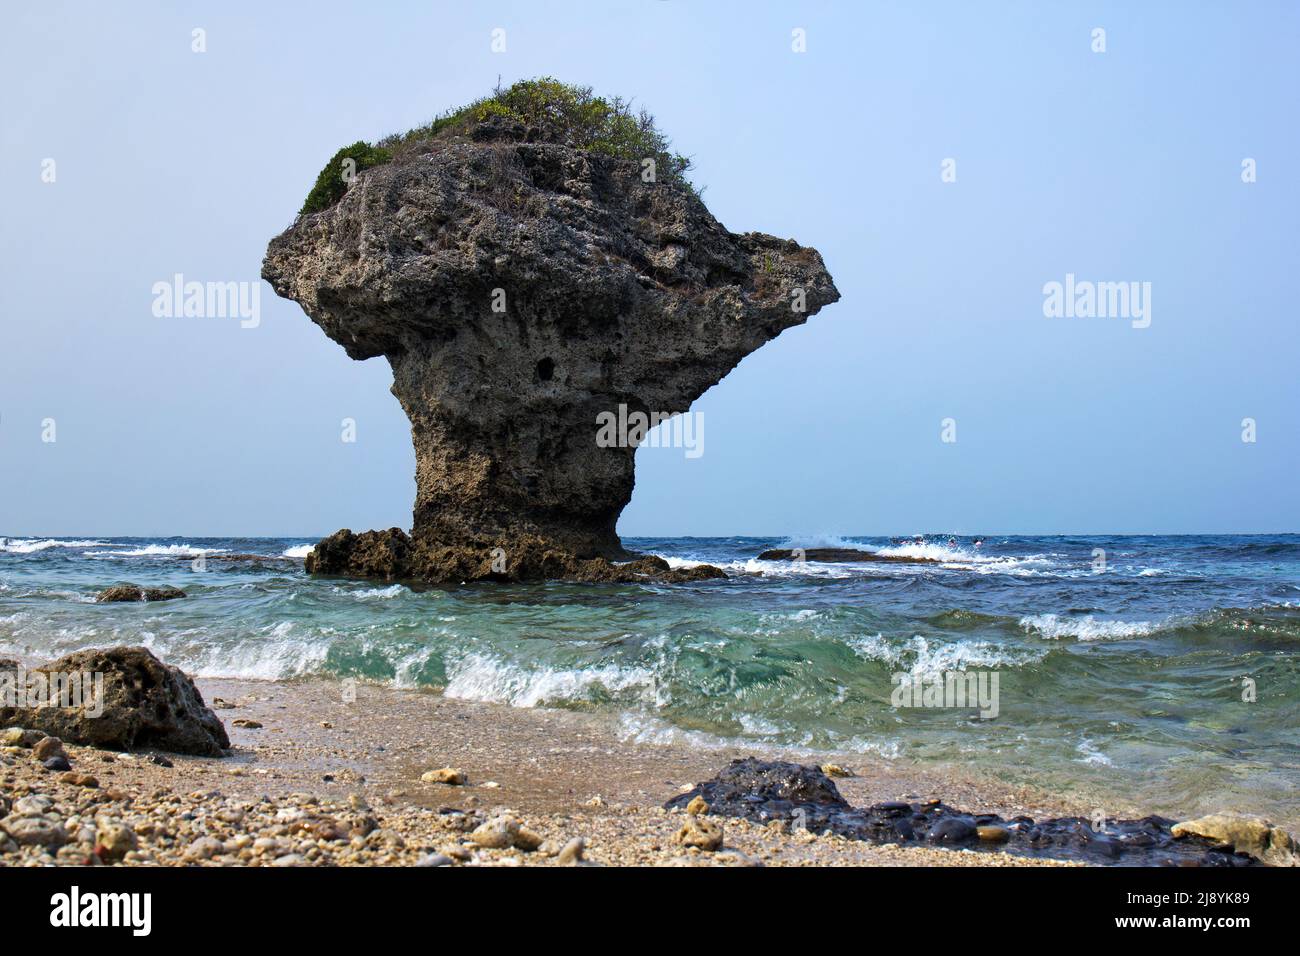 Vase Rock on the Small Liuqiu Island, Taiwan Stock Photo